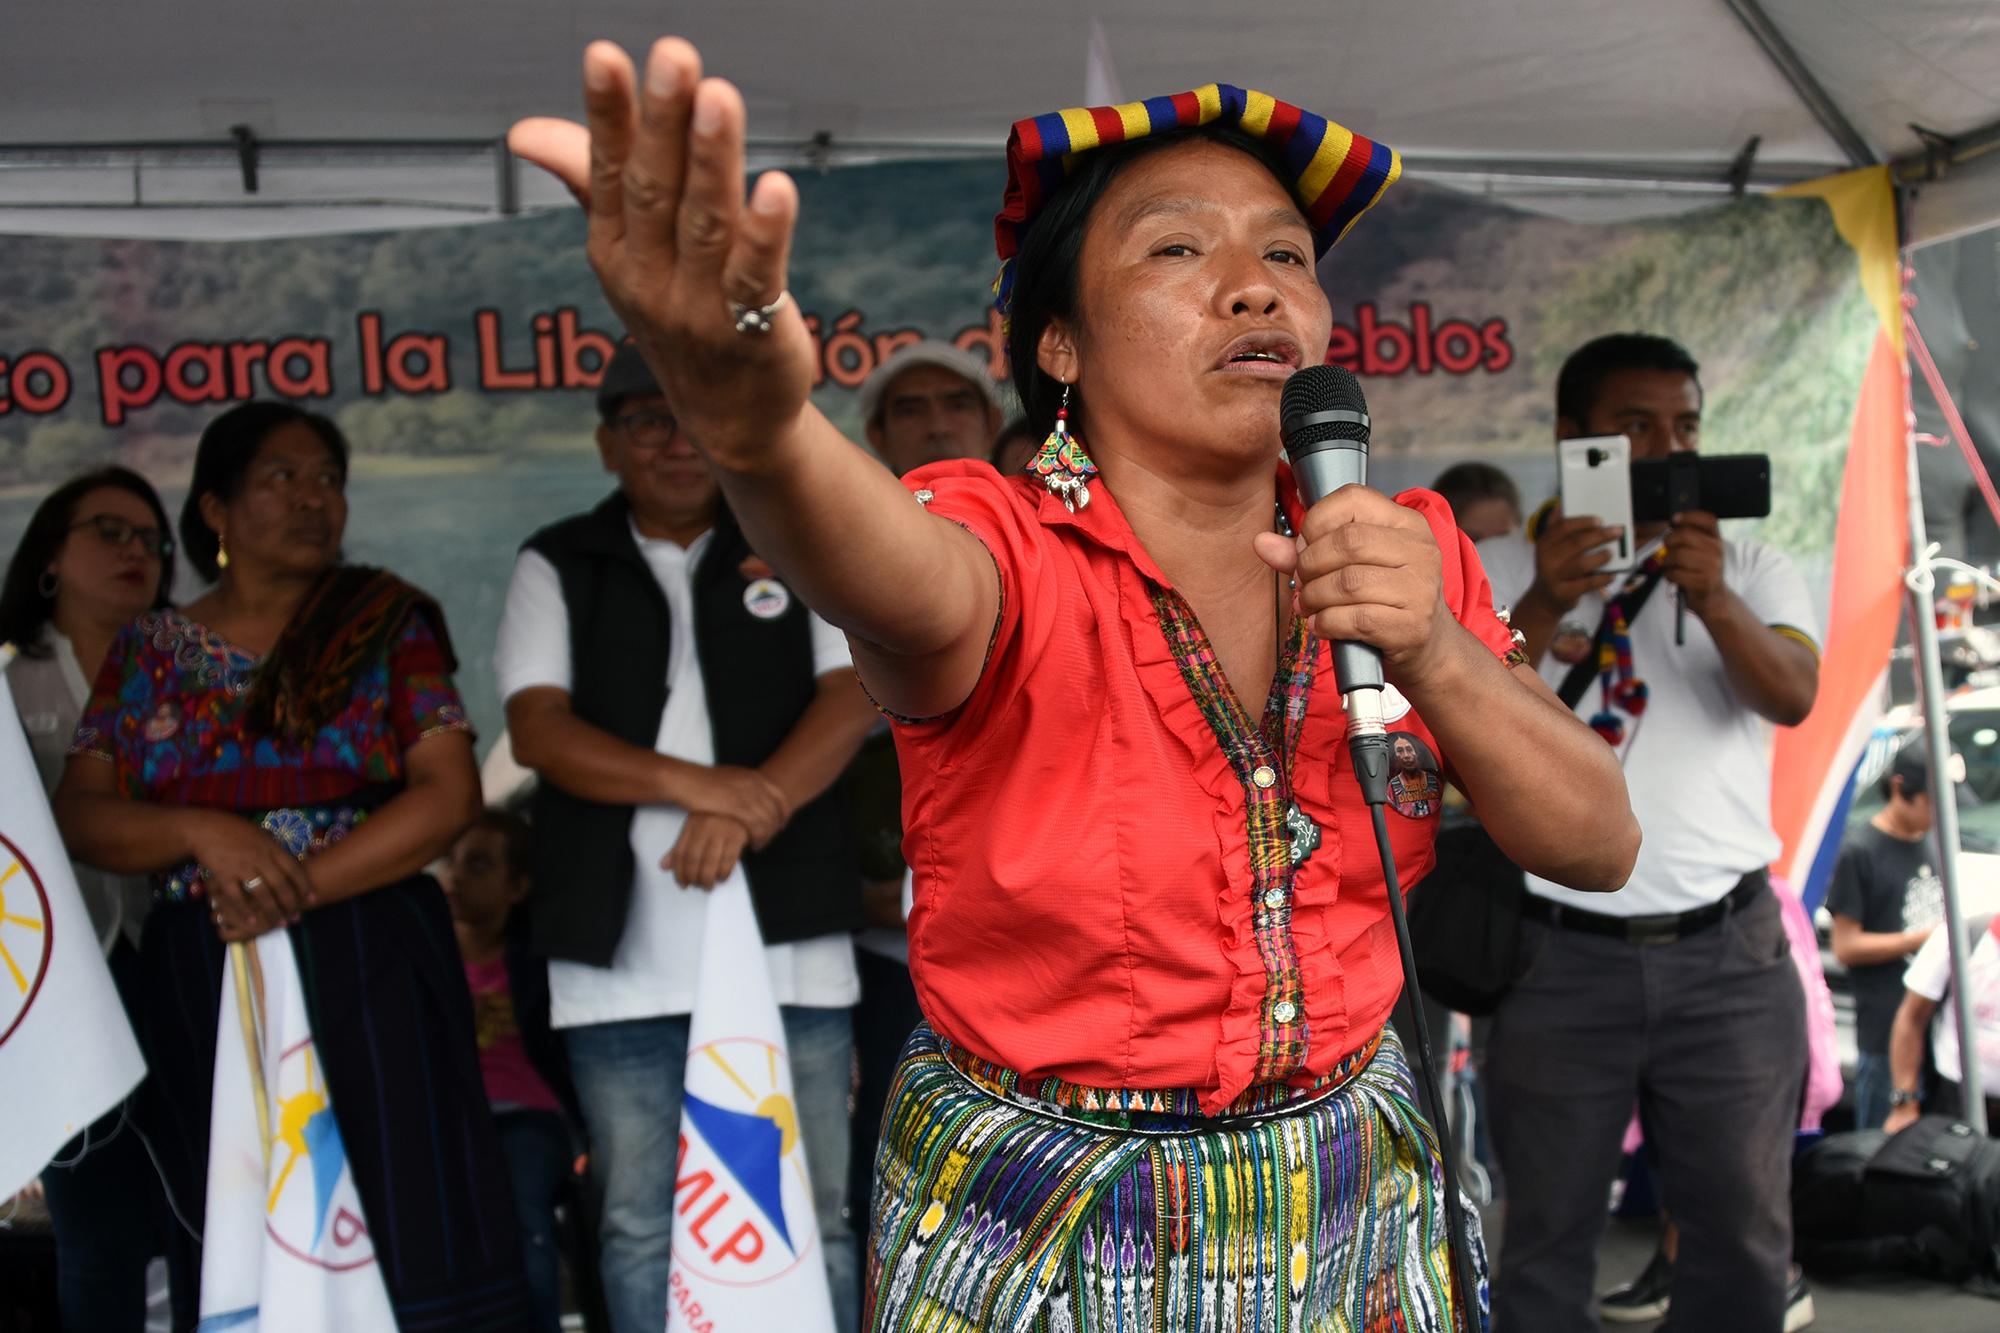 La candidata presidencial por el Movimiento para la Liberación de los Pueblos, la líder indígena Thelma Cabrera, durante un mitin en la Plaza de la Constitución en Ciudad de Guatemala, el 8 de junio de 2019. Foto: Johan Ordóñez/AFP.